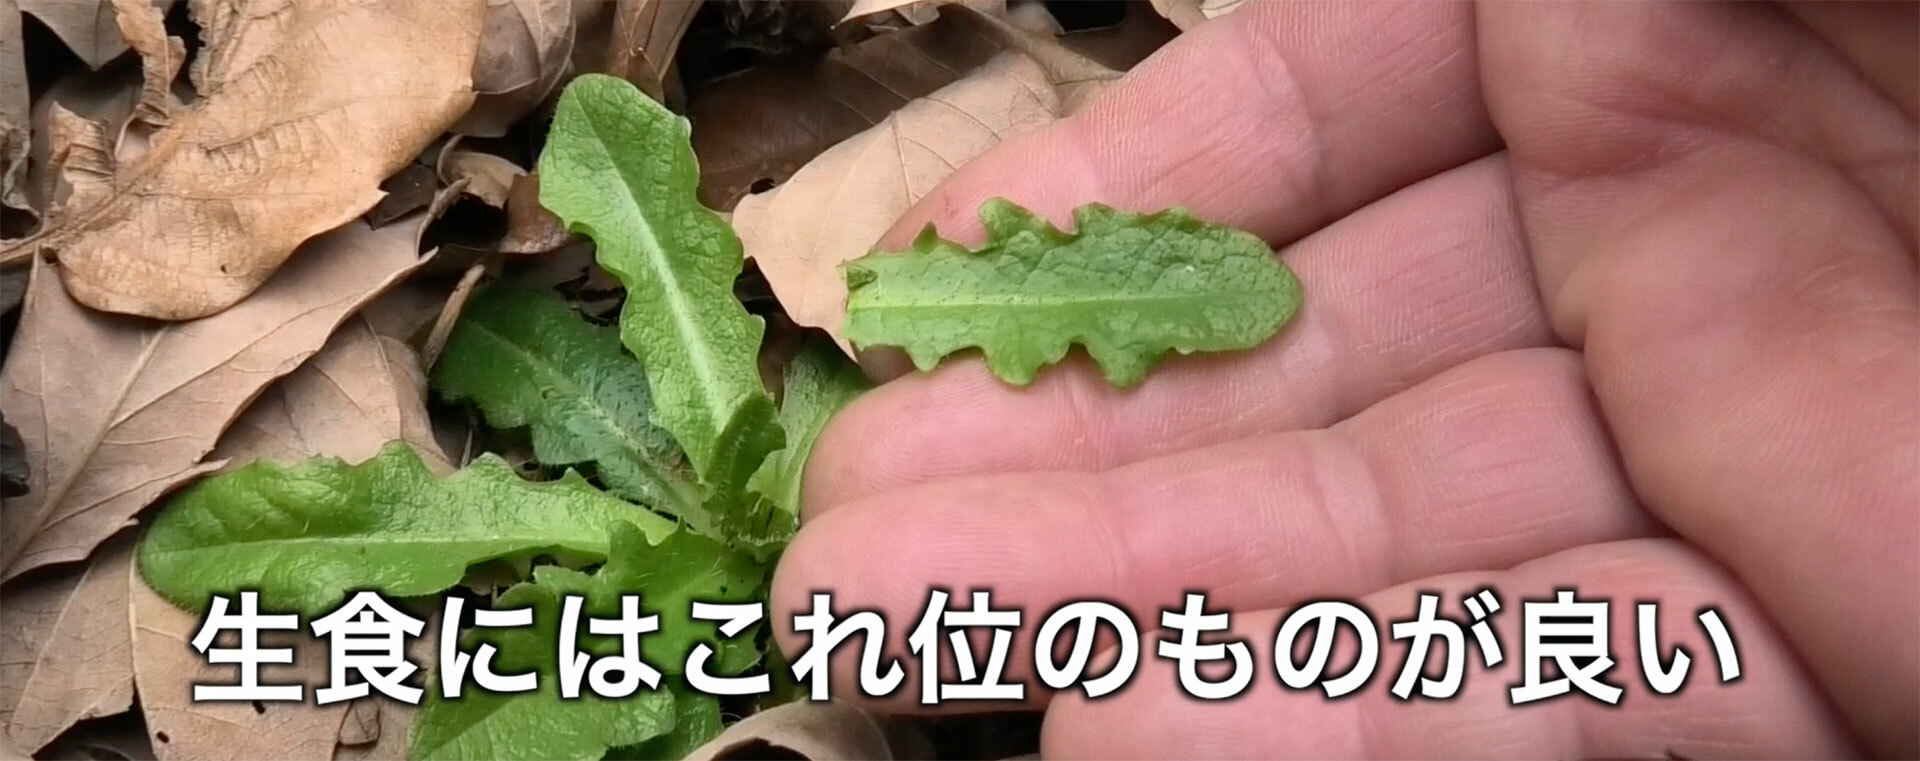 サラダなどに使う生食用なら若い株の柔らかそうな小さな葉を採る